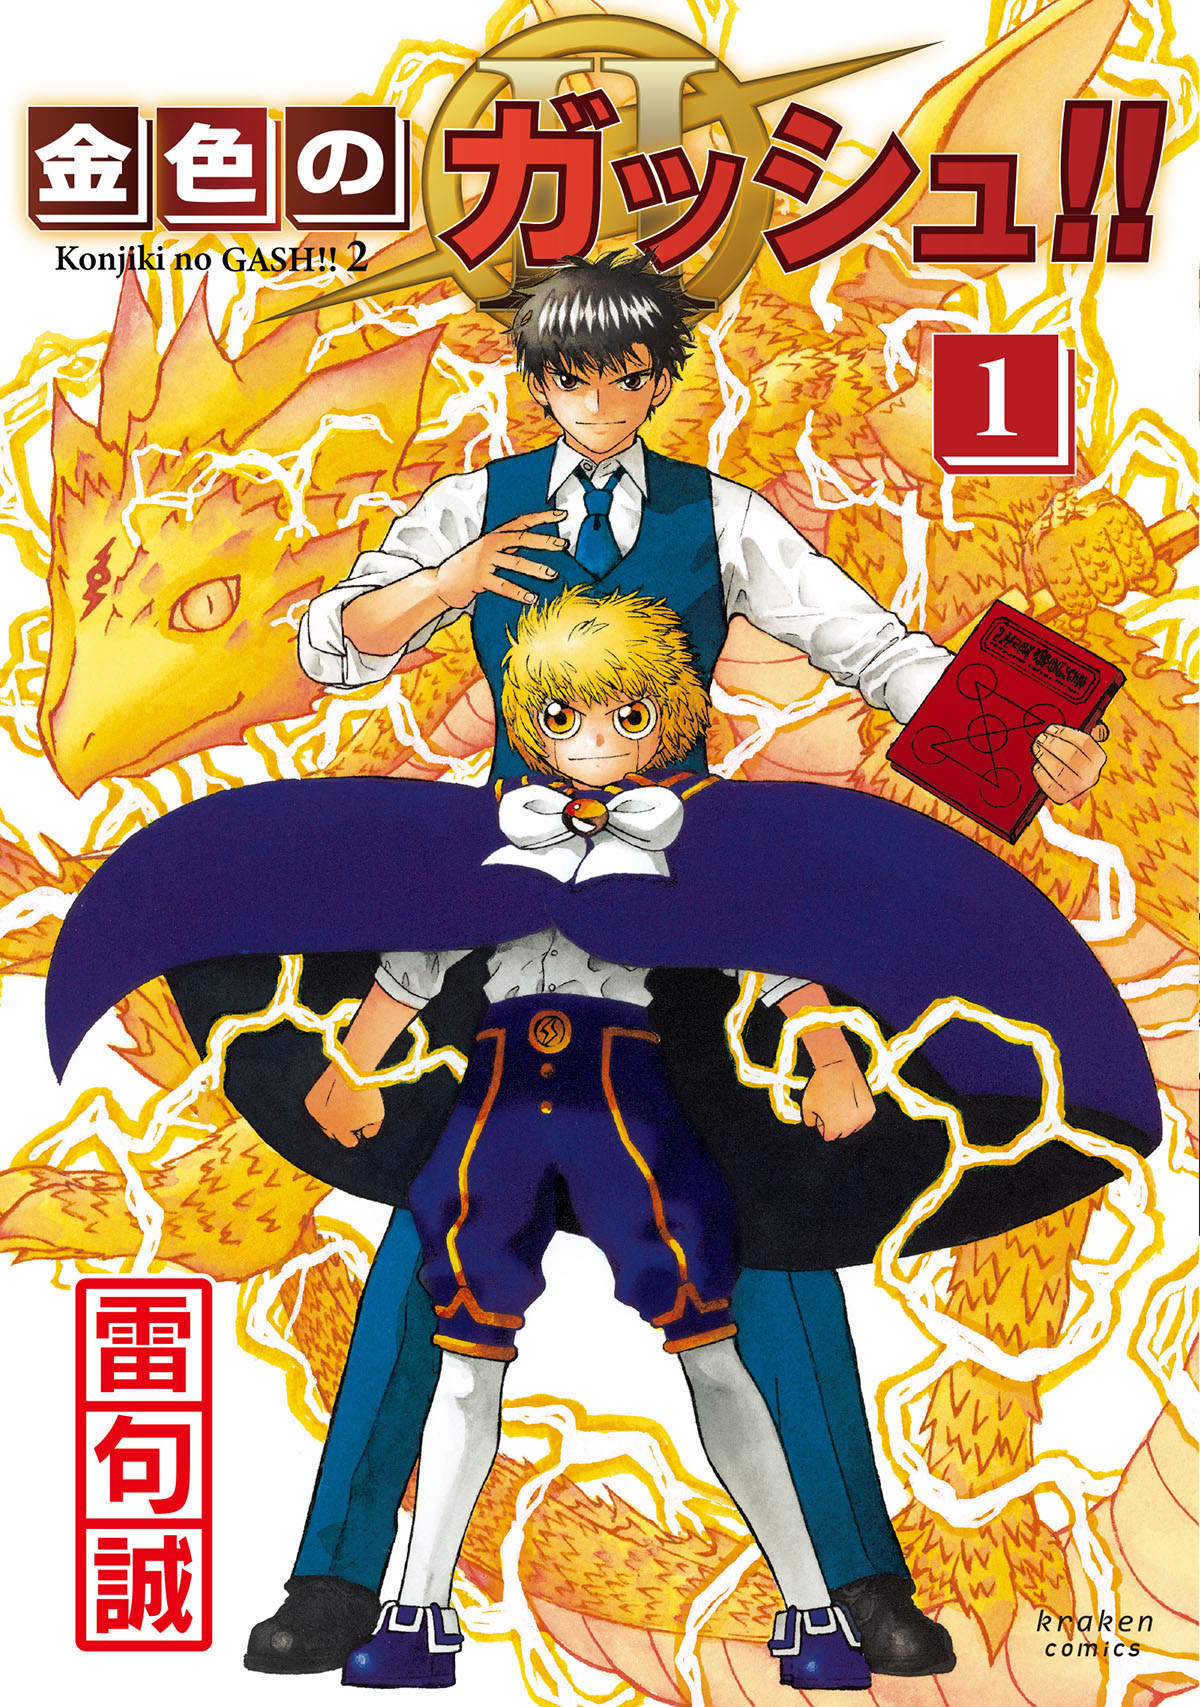 金色のガッシュ!! 2』第1巻が紙版・電子版ともに9月16日に発売決定